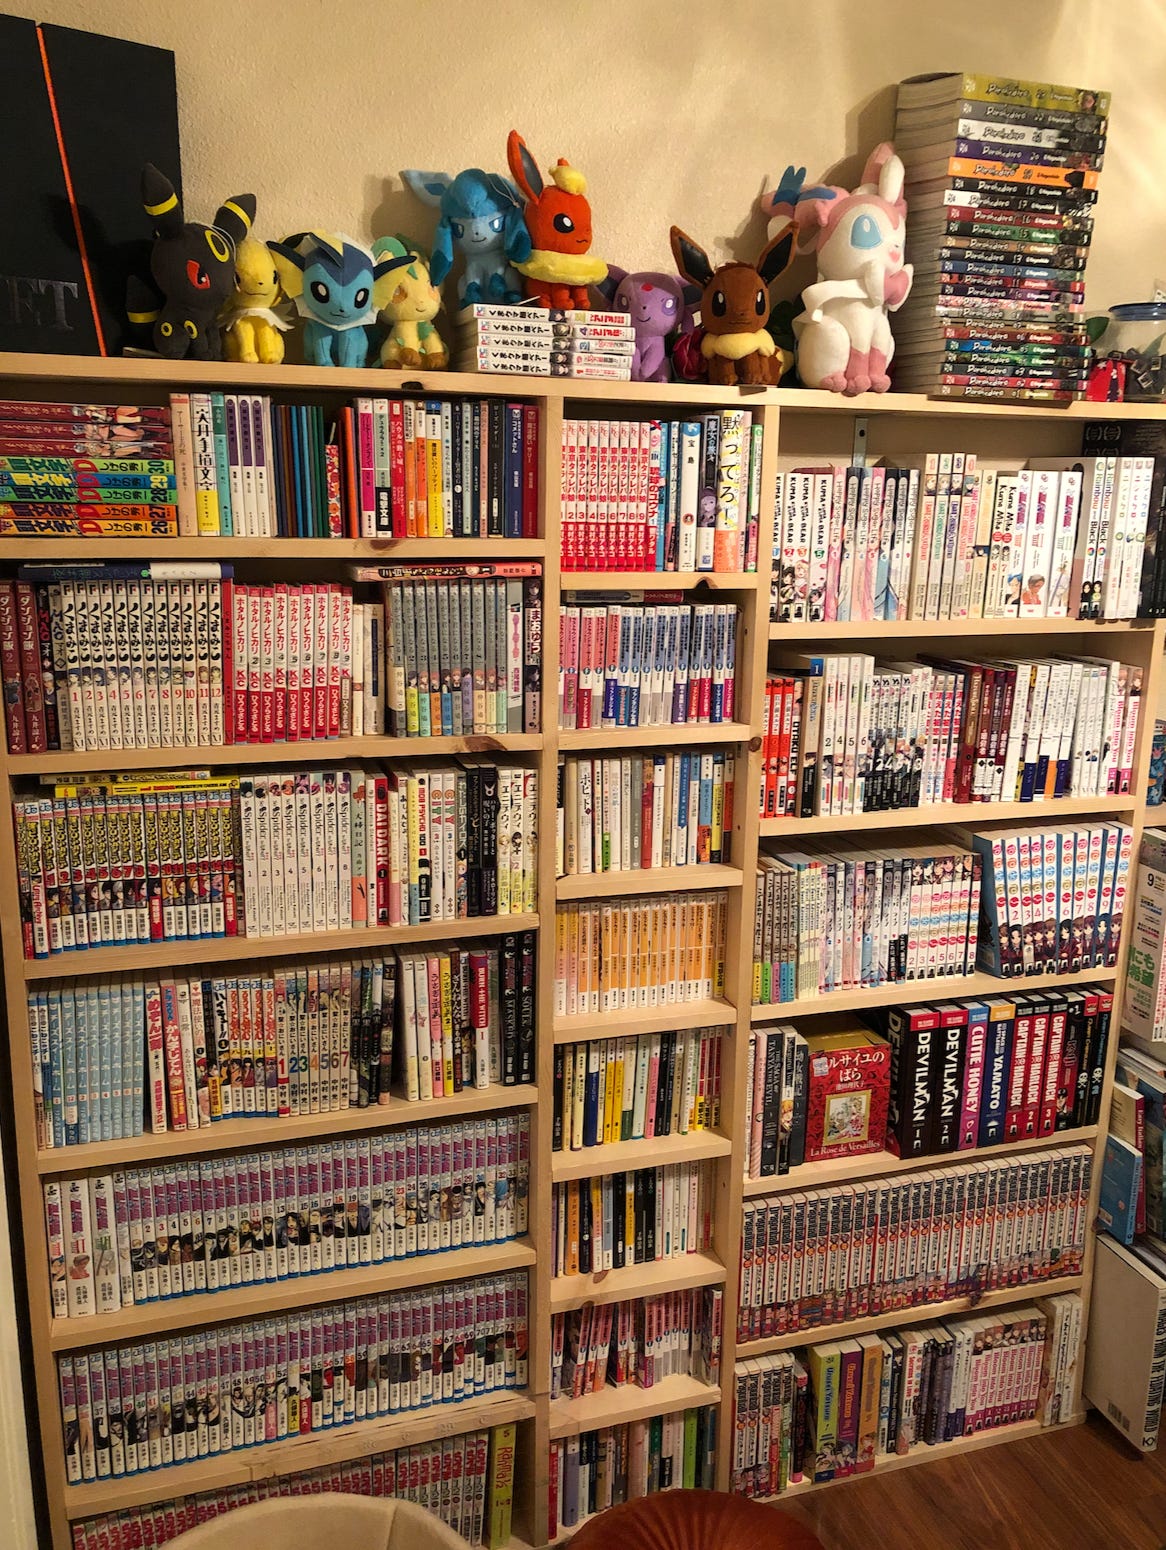 A bookshelf full of books